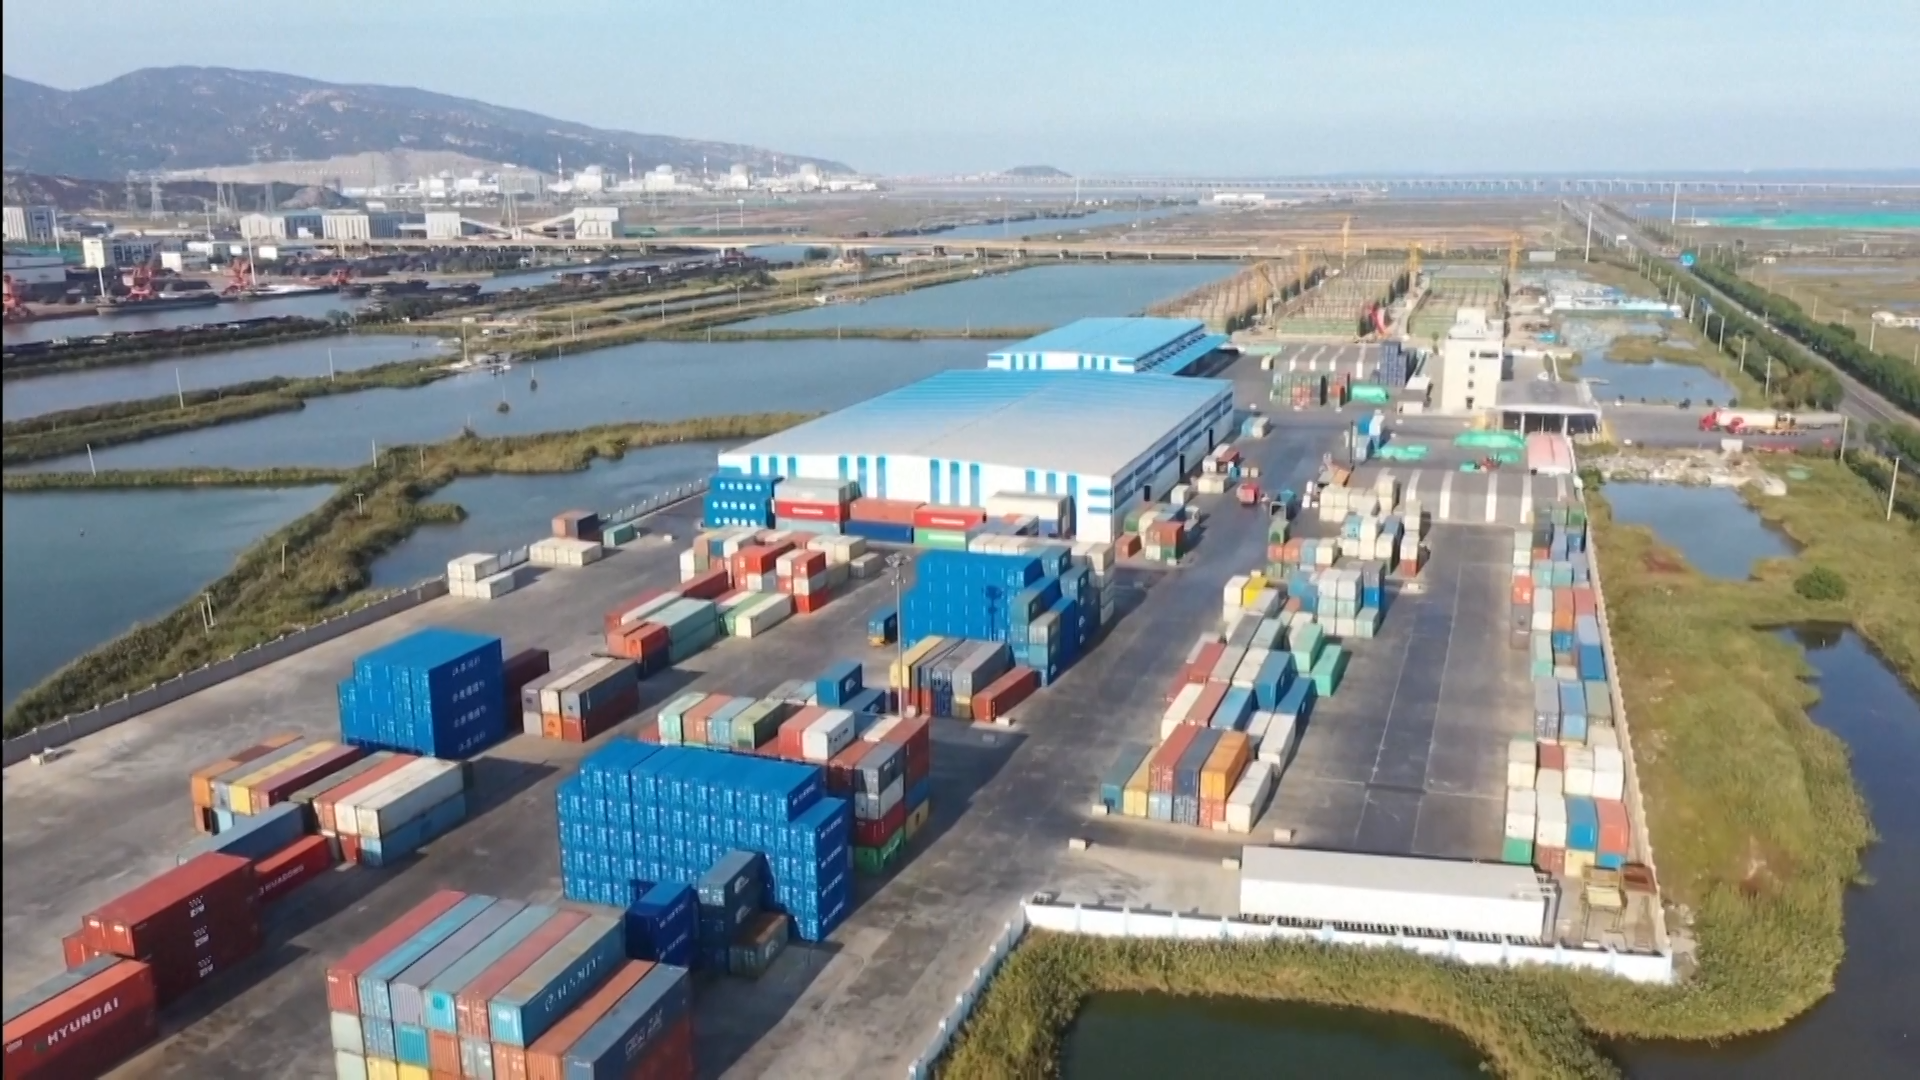 Ruch kontenerowy w Międzynarodowym Parku Logistycznym Szanghajskiej Organizacji Współpracy (Lianyungang) wzrósł w pierwszym półroczu o 28,12%